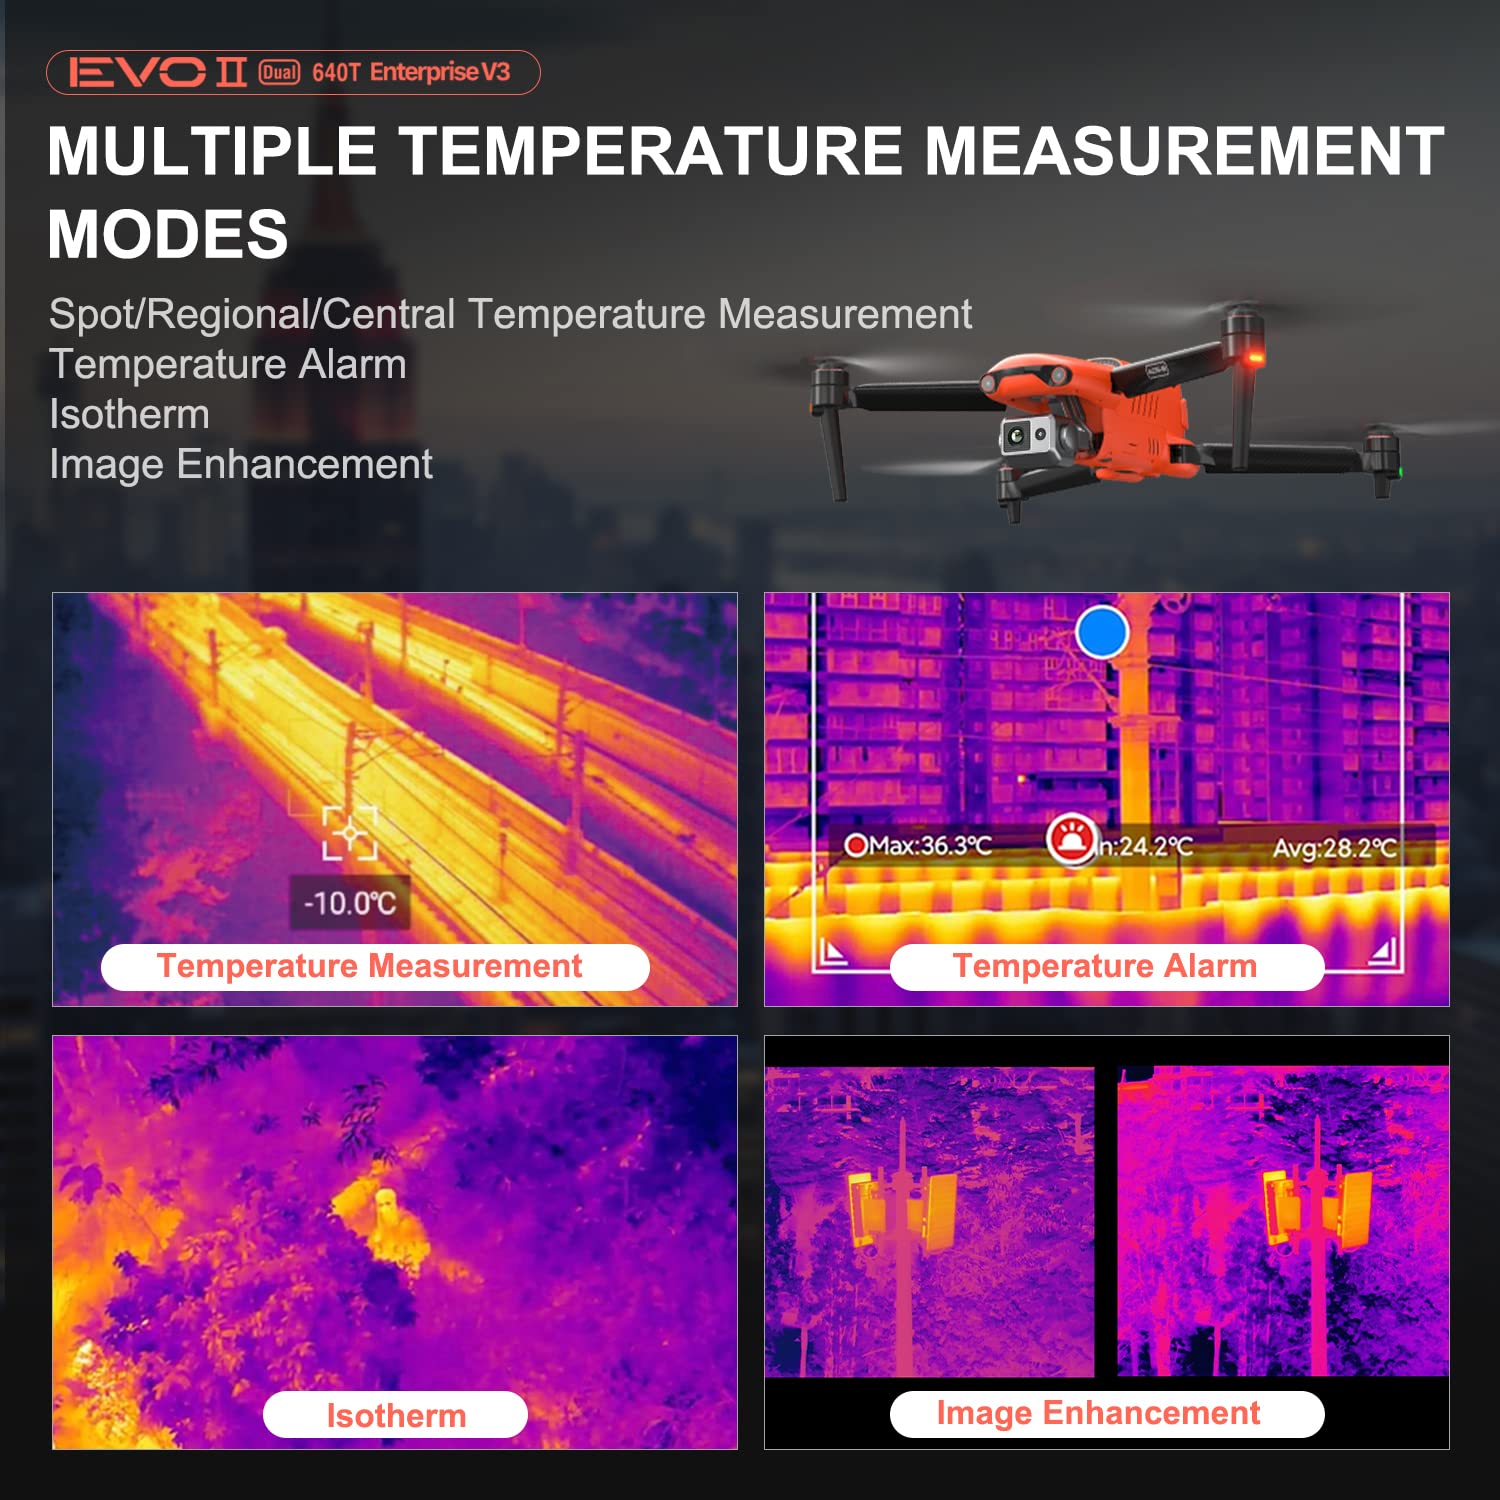 Autel EVO II Dual 640T Enterprise Bundle [V3] - Multiple Temperature Measurement Modes